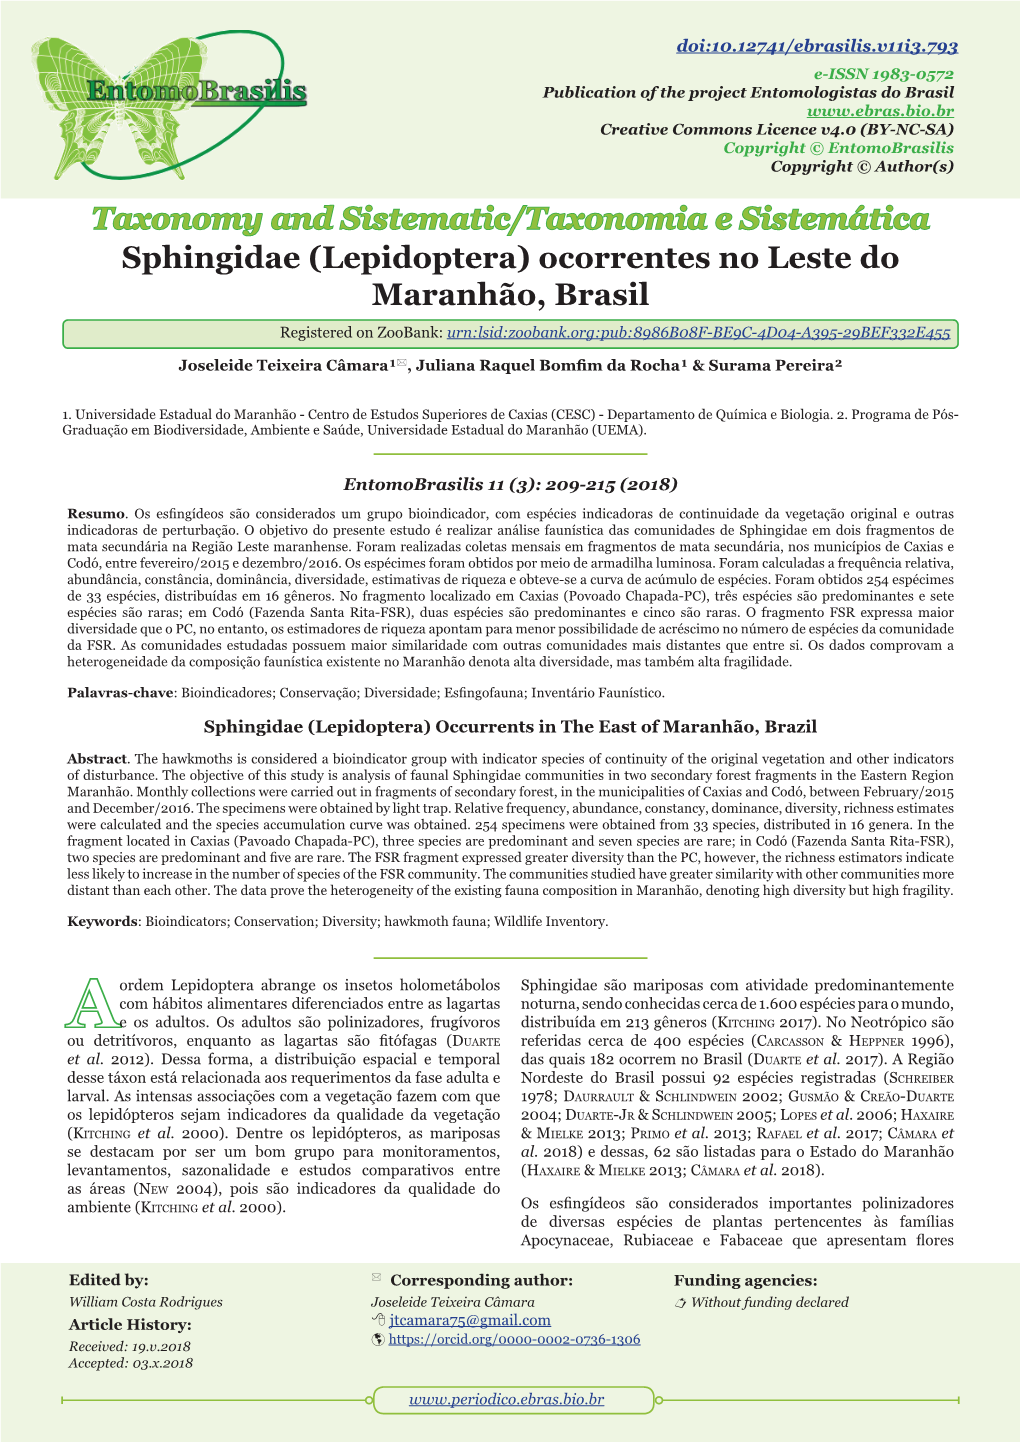 Sphingidae (Lepidoptera) Ocorrentes No Leste Do Maranhão, Brasil Registered on Zoobank: Urn:Lsid:Zoobank.Org:Pub:8986B08F-BE9C-4D04-A395-29BEF332E455